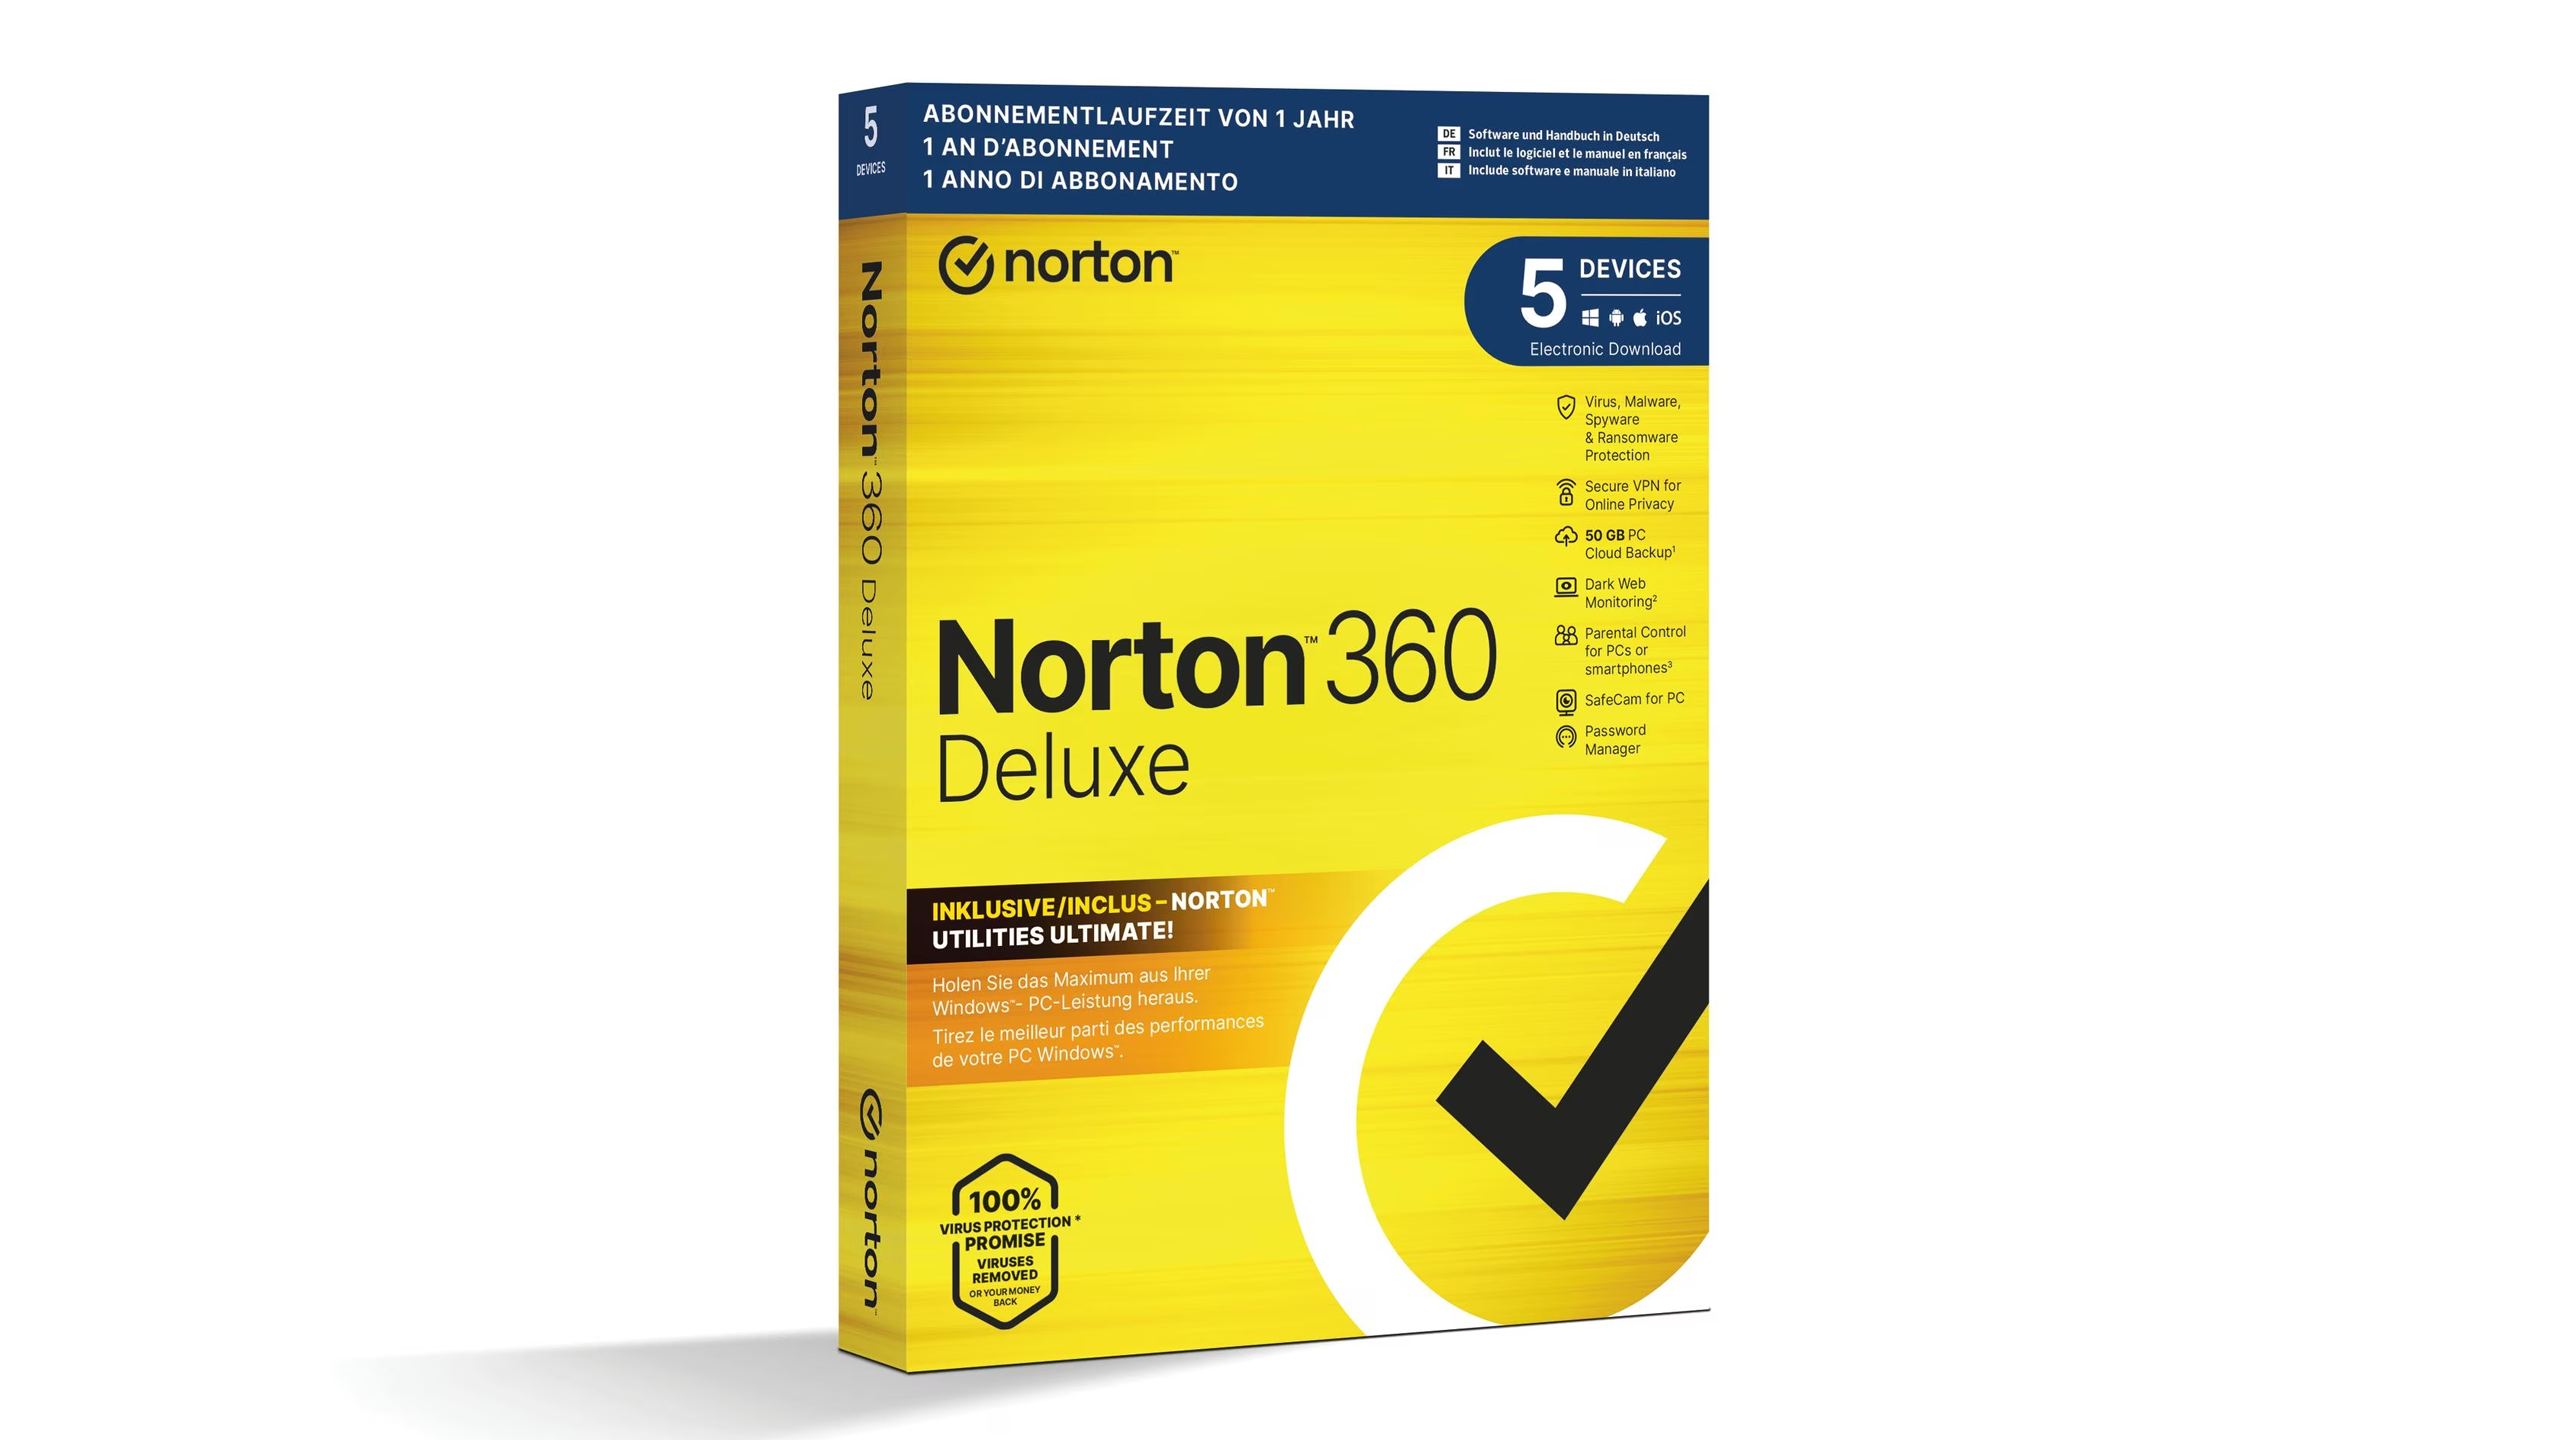 Norton 360 Deluxe: Mest kompletta verktygslådan för säkerhet